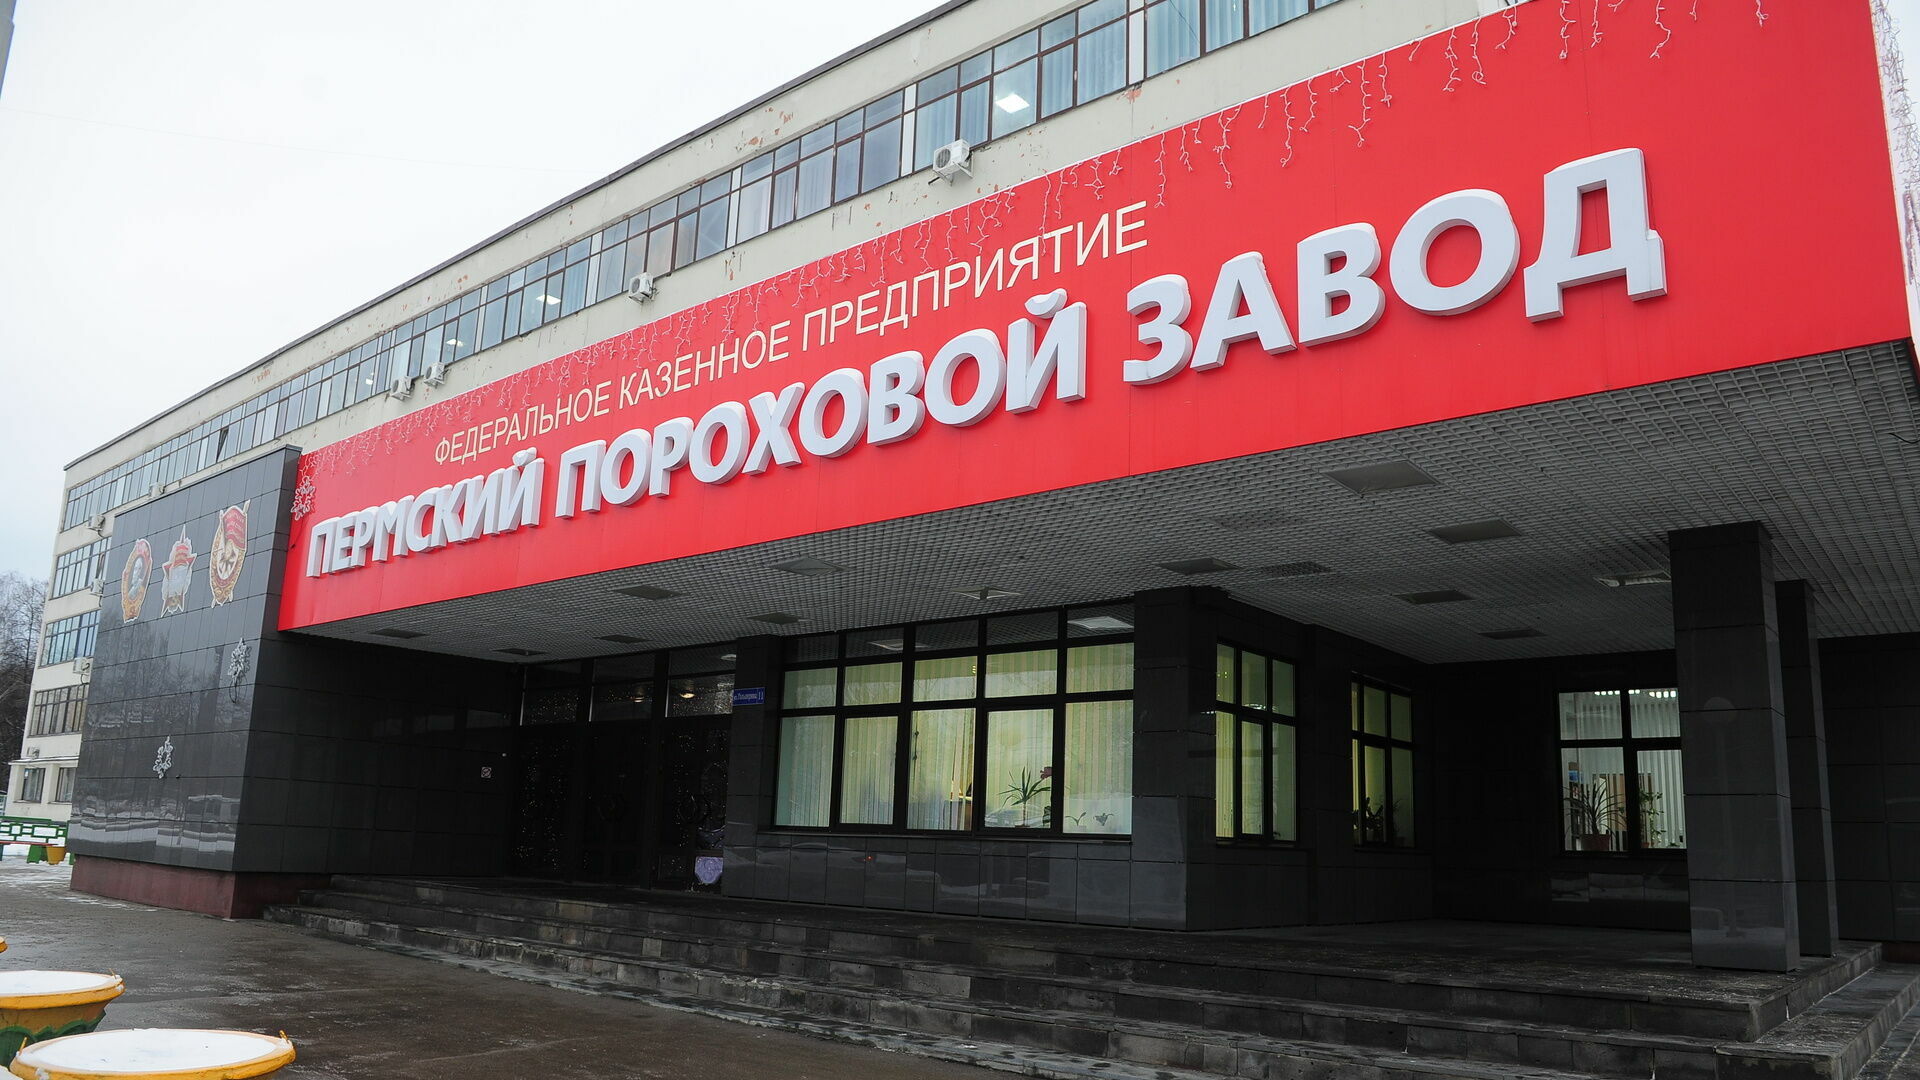 Пострадавший на Пермском пороховом заводе продолжает оставаться в больнице